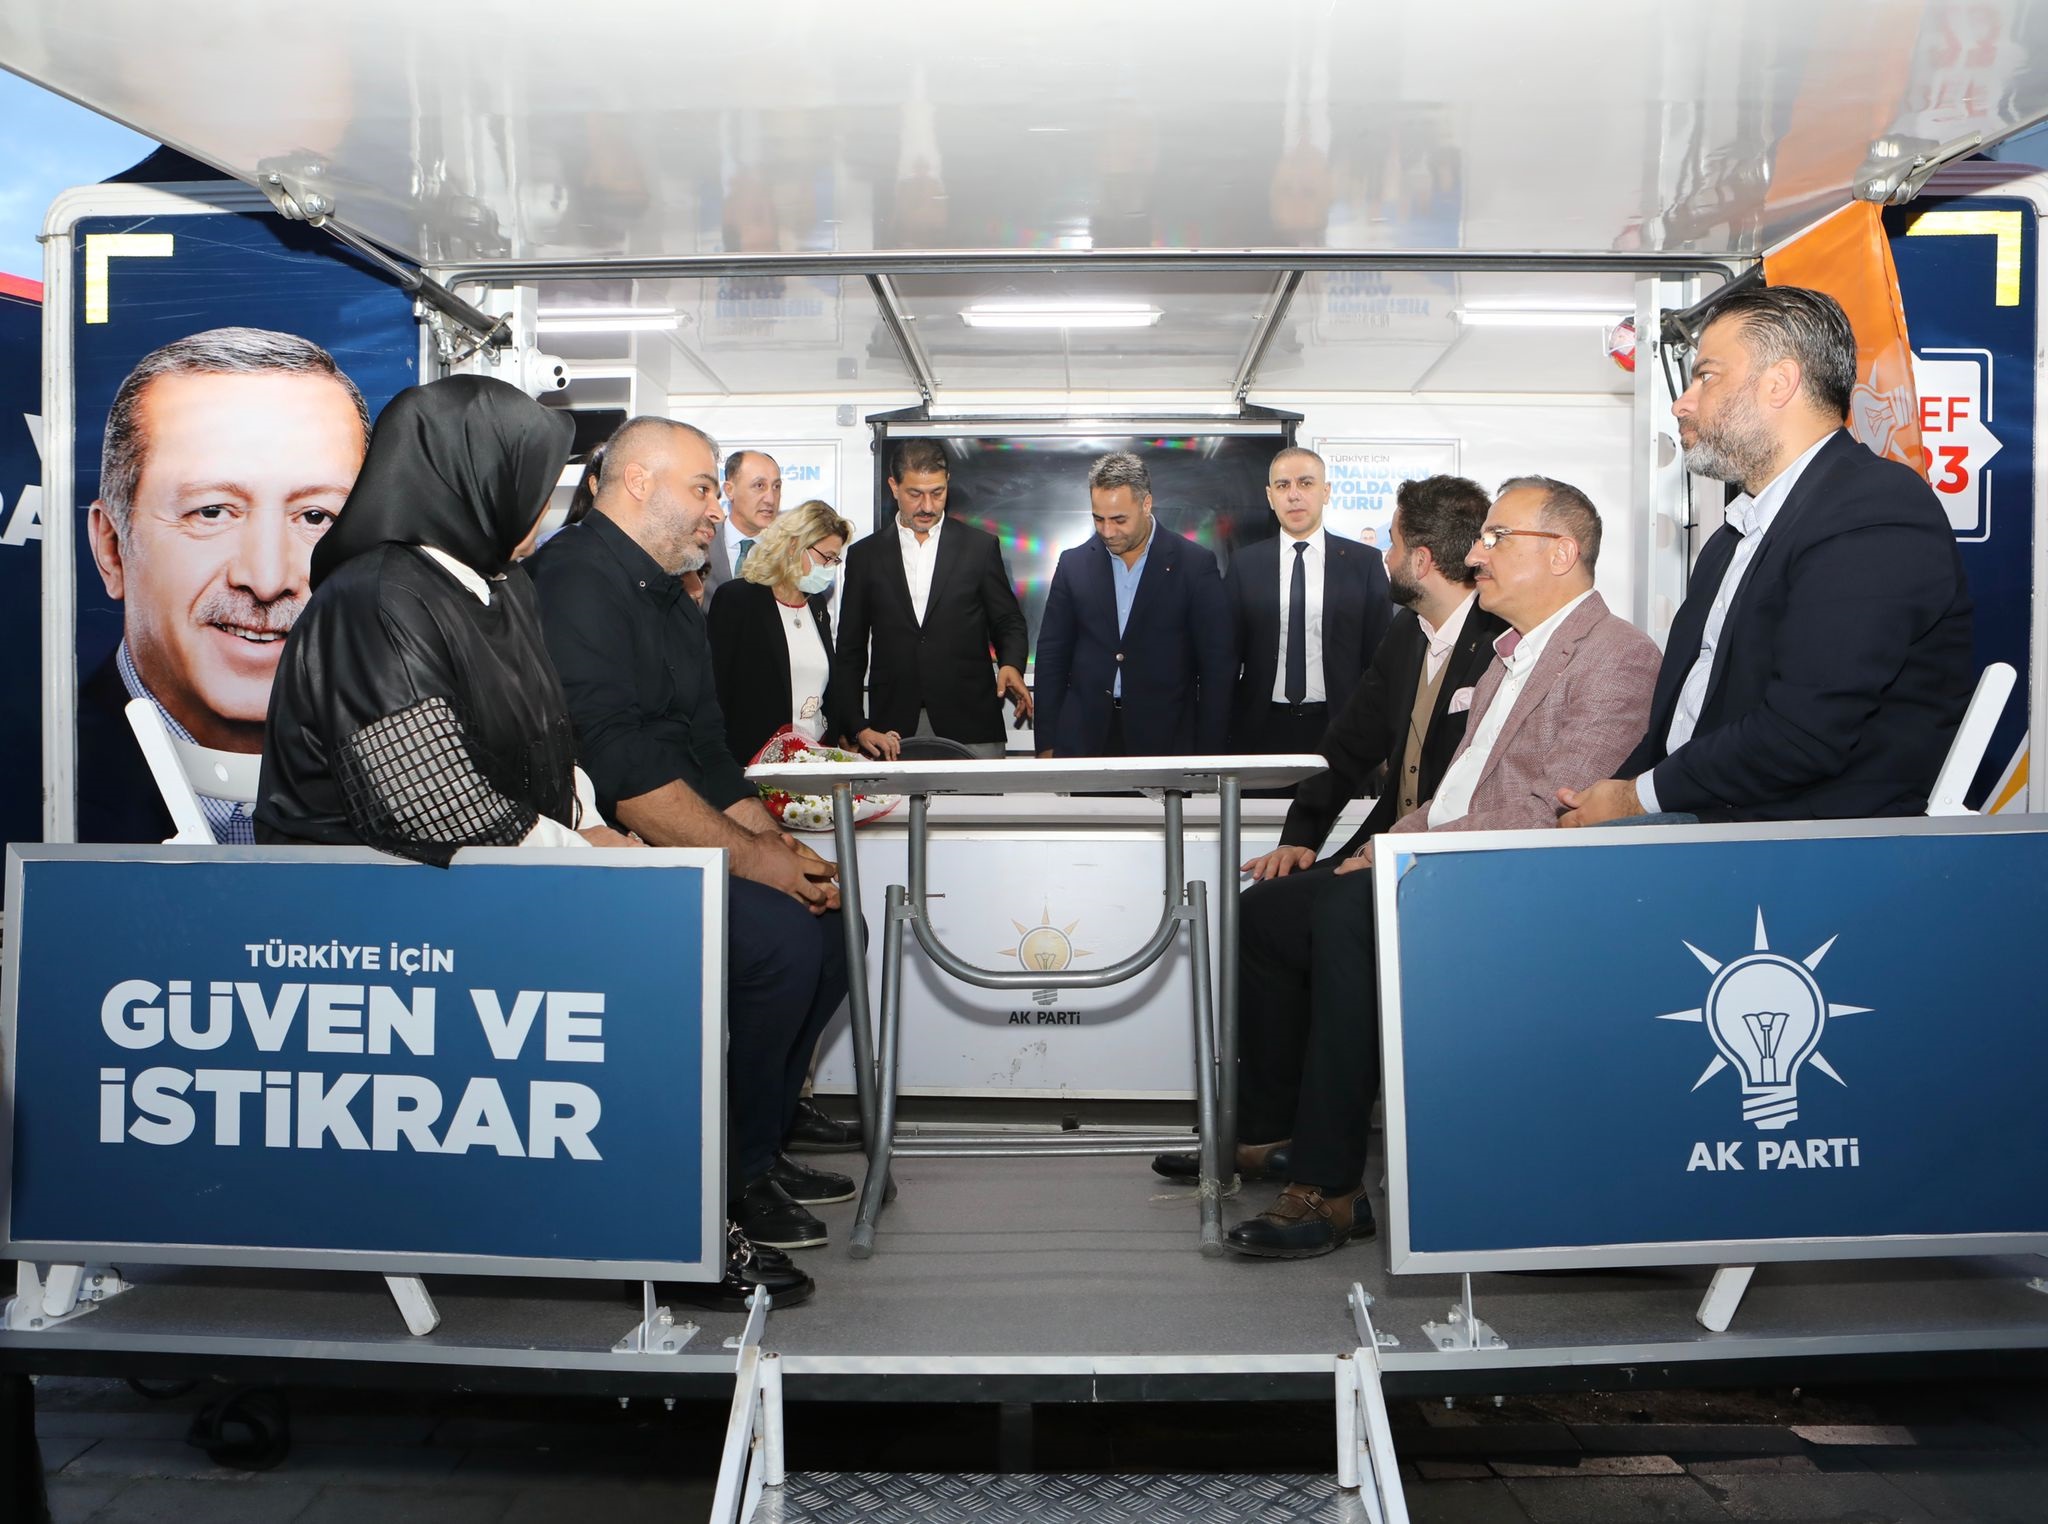 AK Parti İzmir İl Başkanı Kerem Ali Sürekli;  “Yatırım ve hizmet rüzgârı bizimle esiyor!”